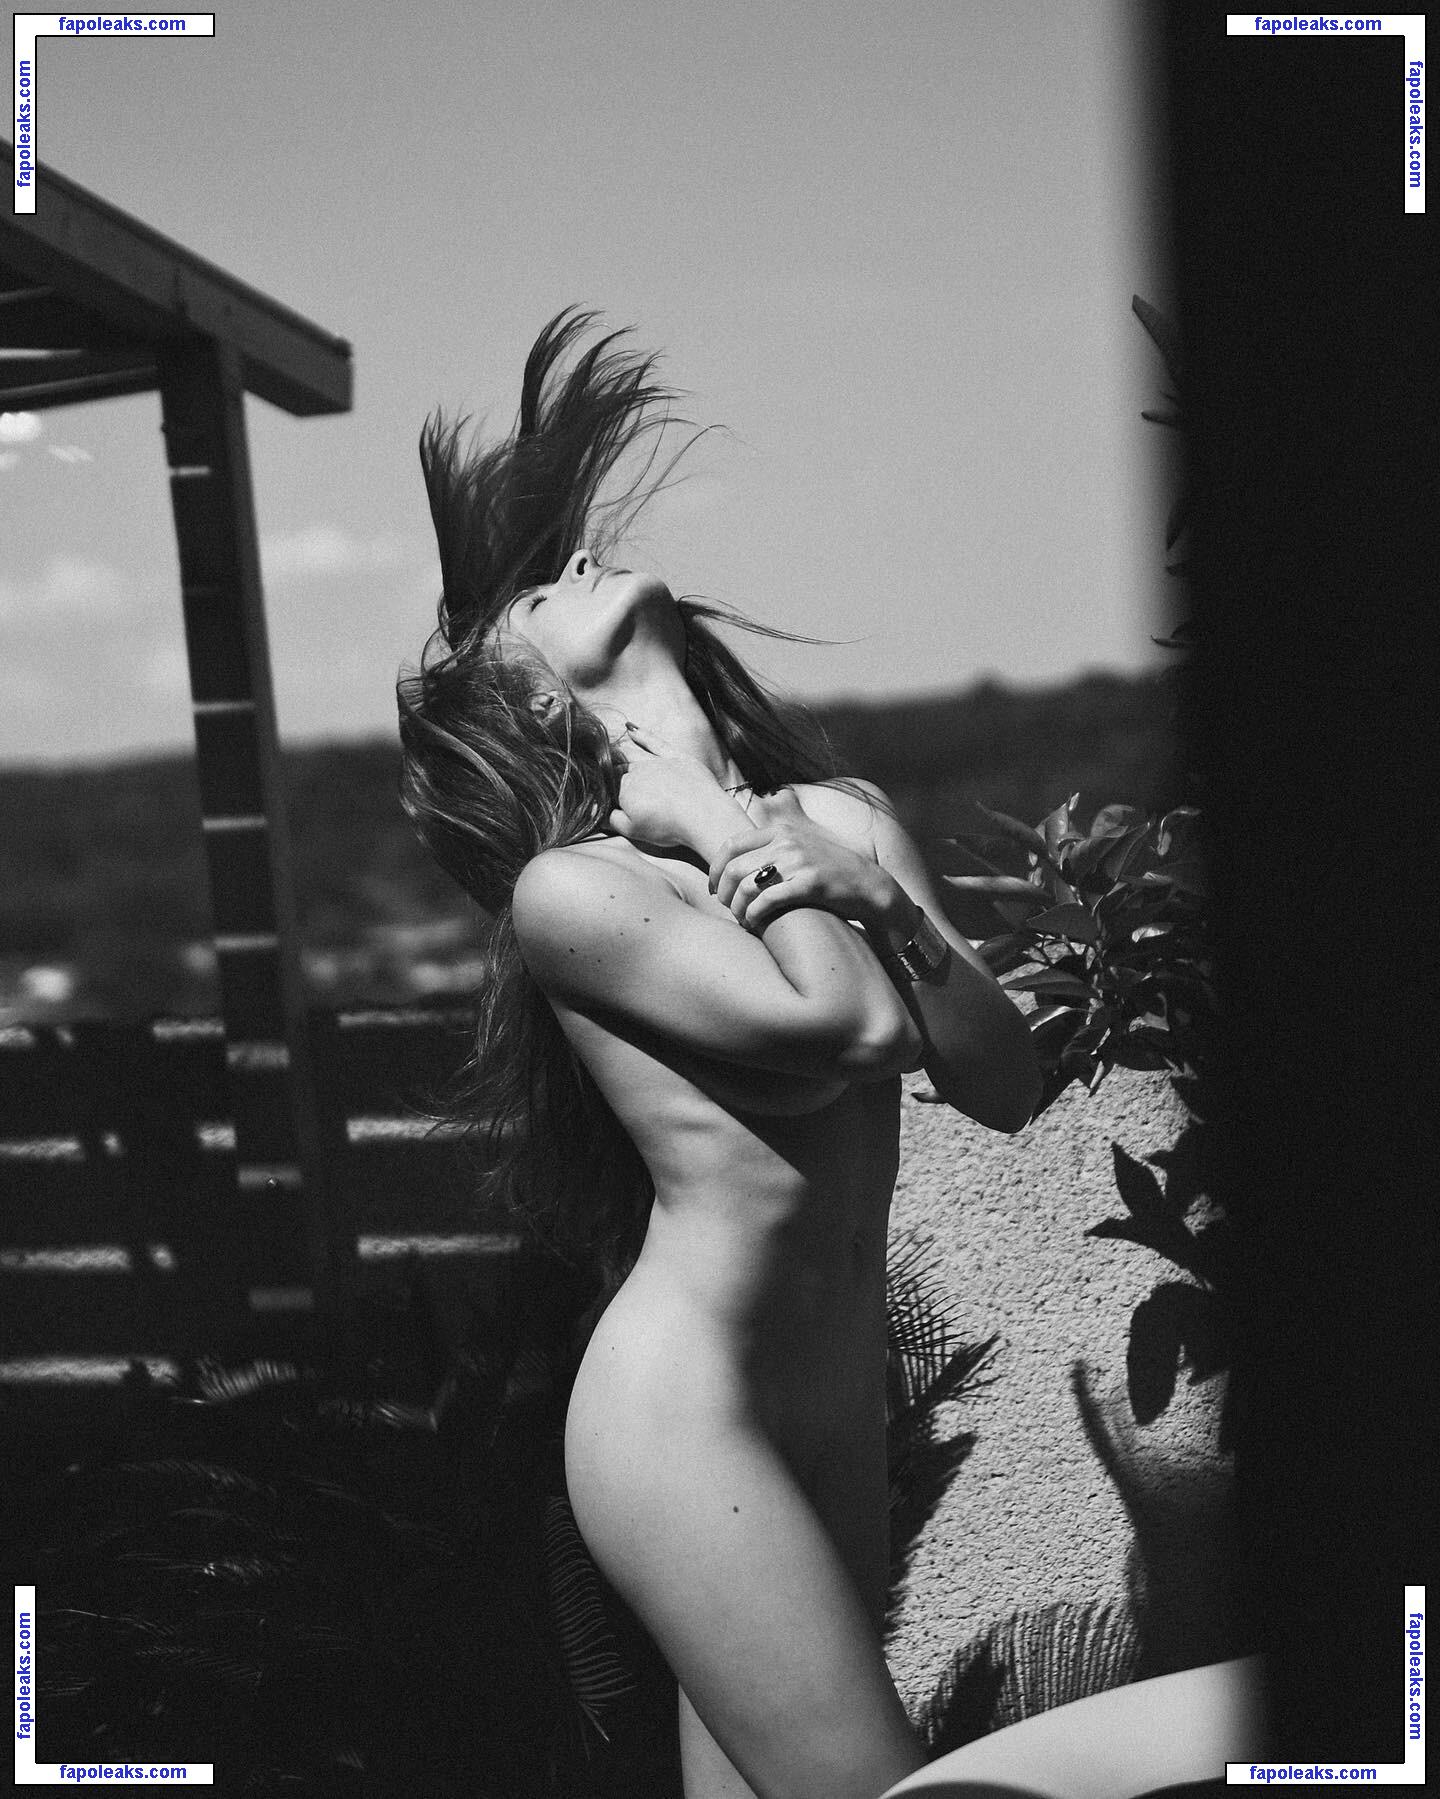 Chloe Bonhaure / chloebonhaure / chloewildd nude photo #0033 from OnlyFans